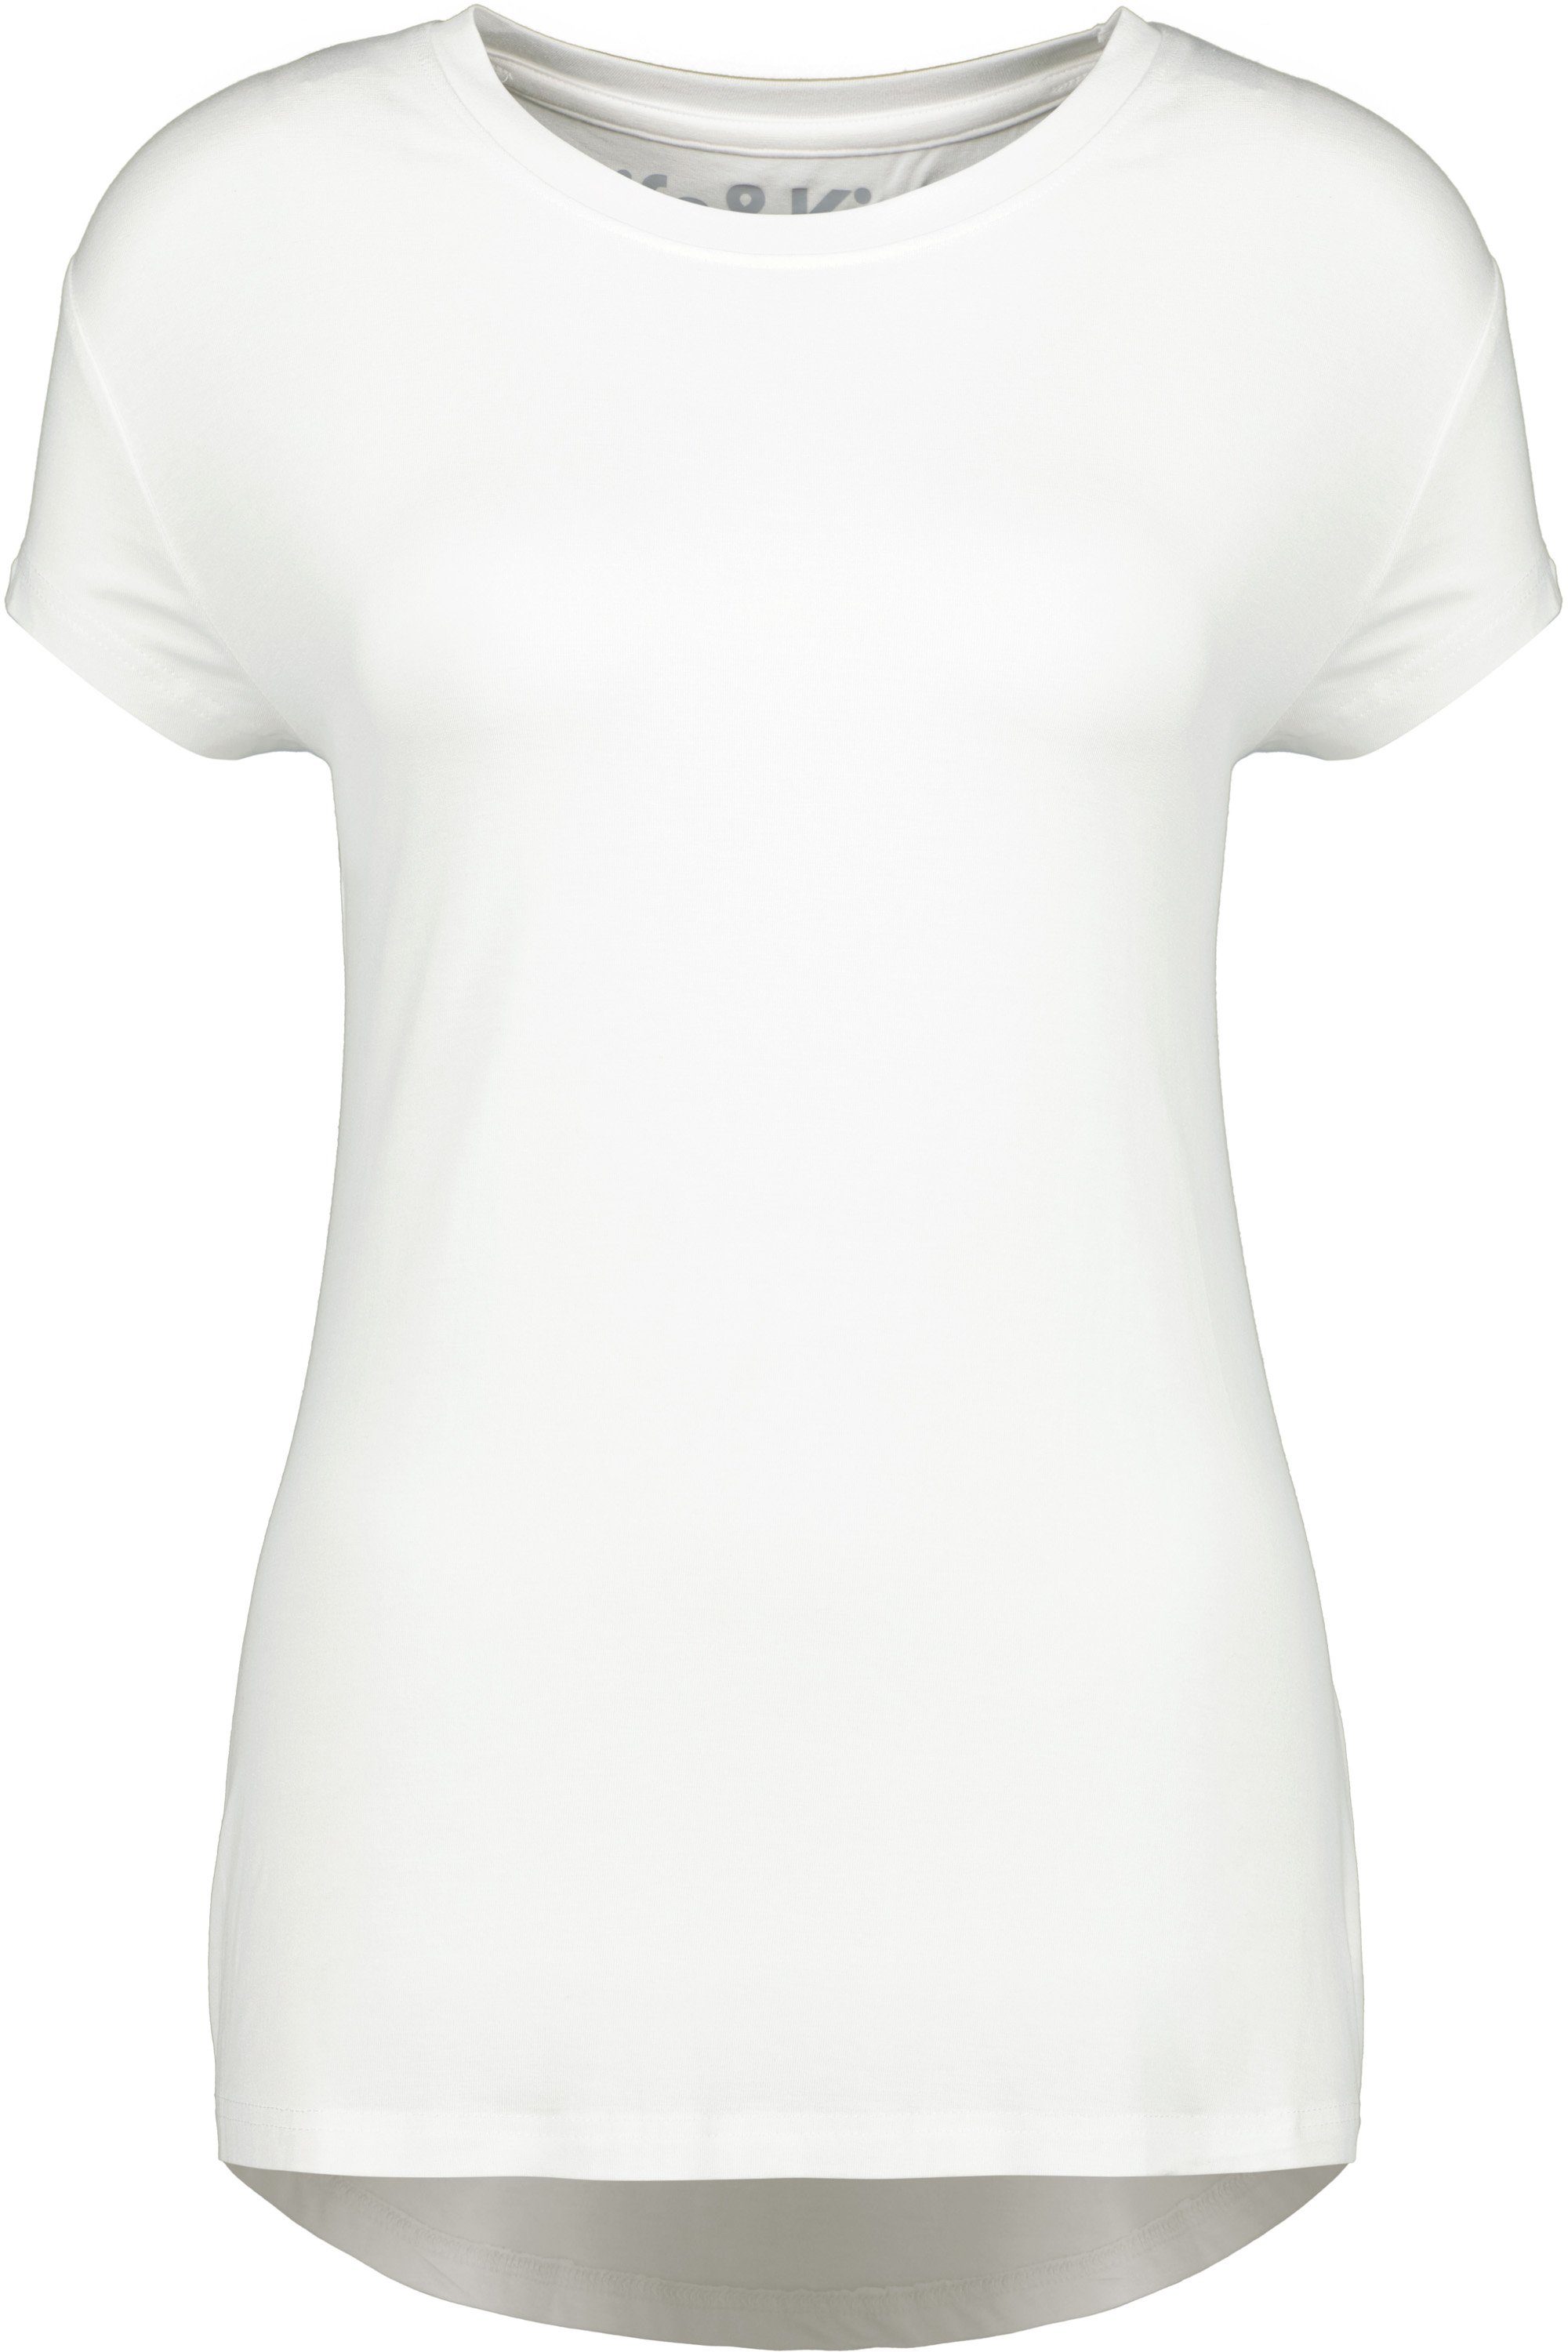 Damen Kurzarmshirt, Rundhalsshirt Shirt Shirt white & Alife MimmyAK A Kickin